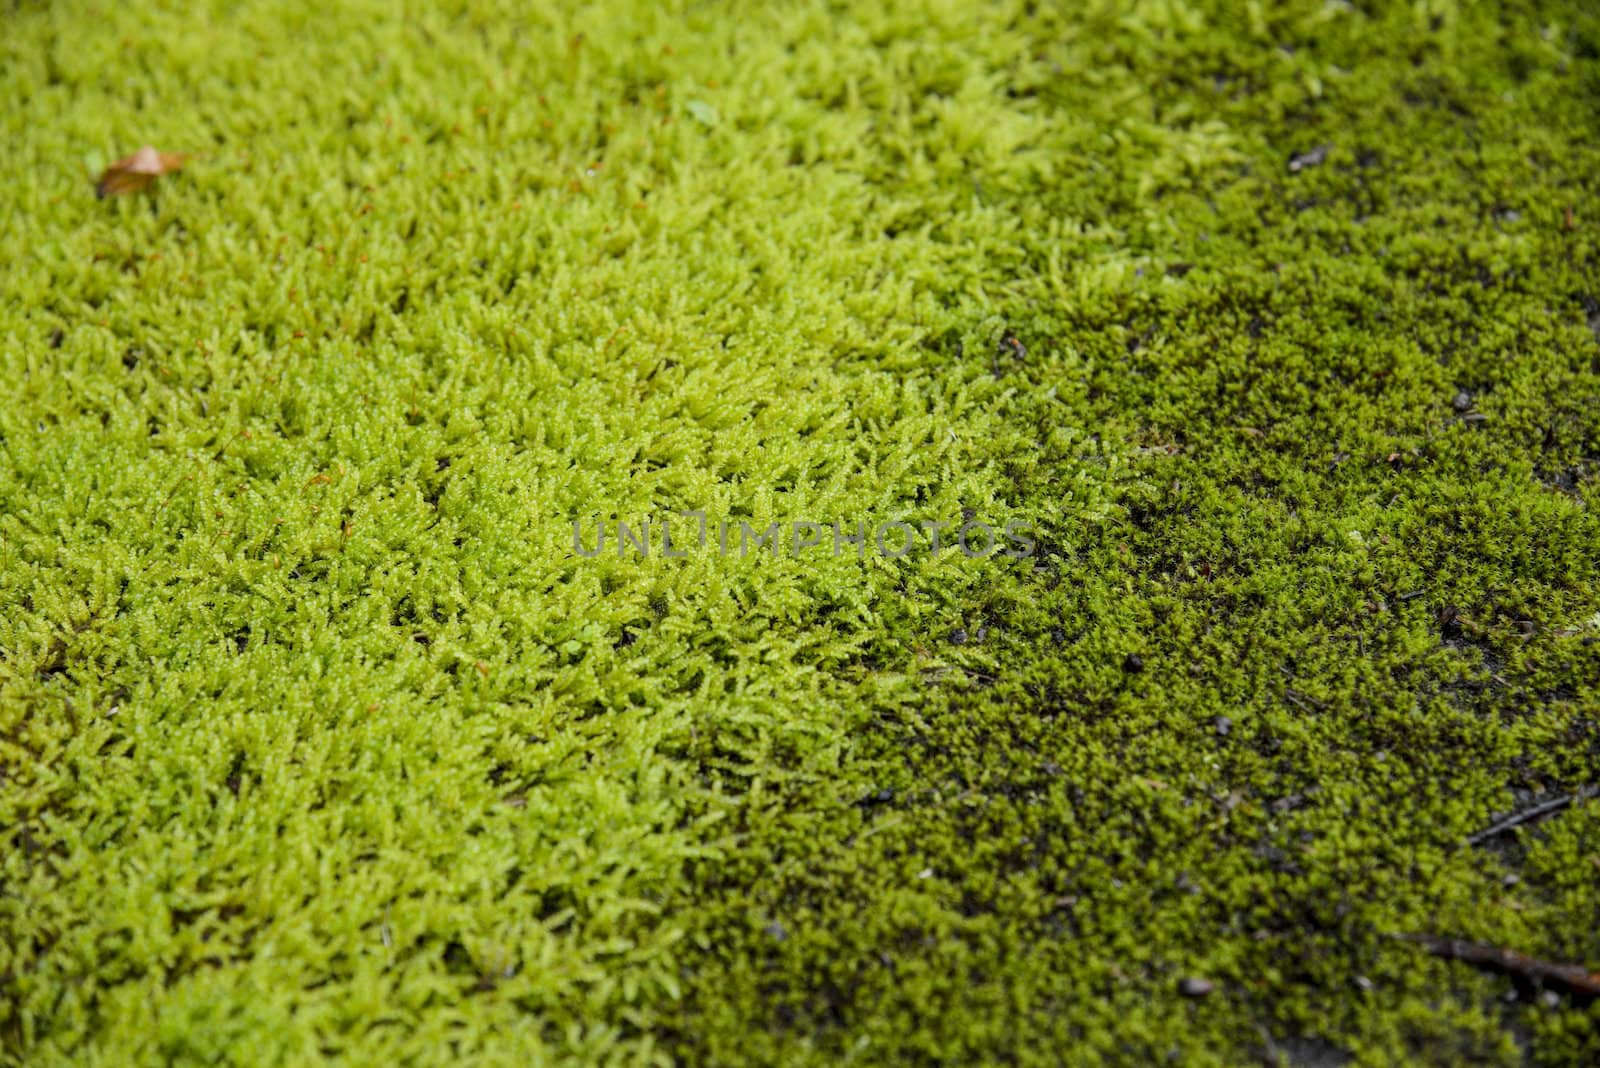 Green moss on the floor1 by gjeerawut